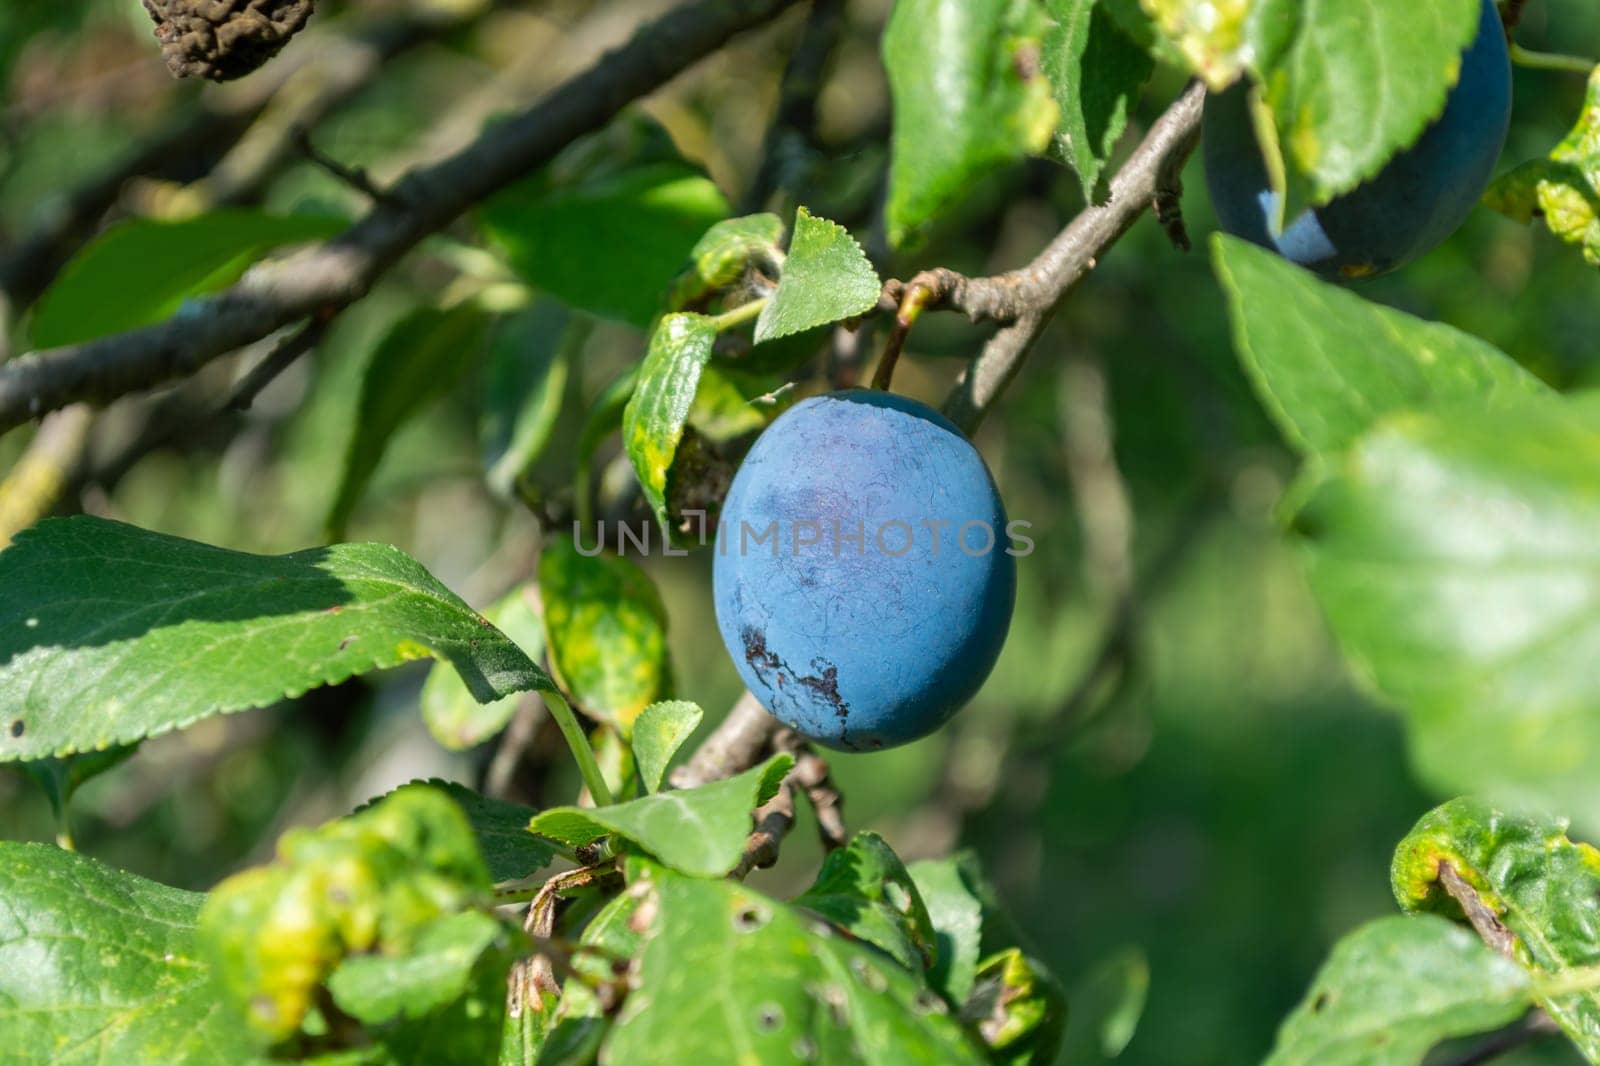 Blue ripe plum on a branch in a green garden by orebrik